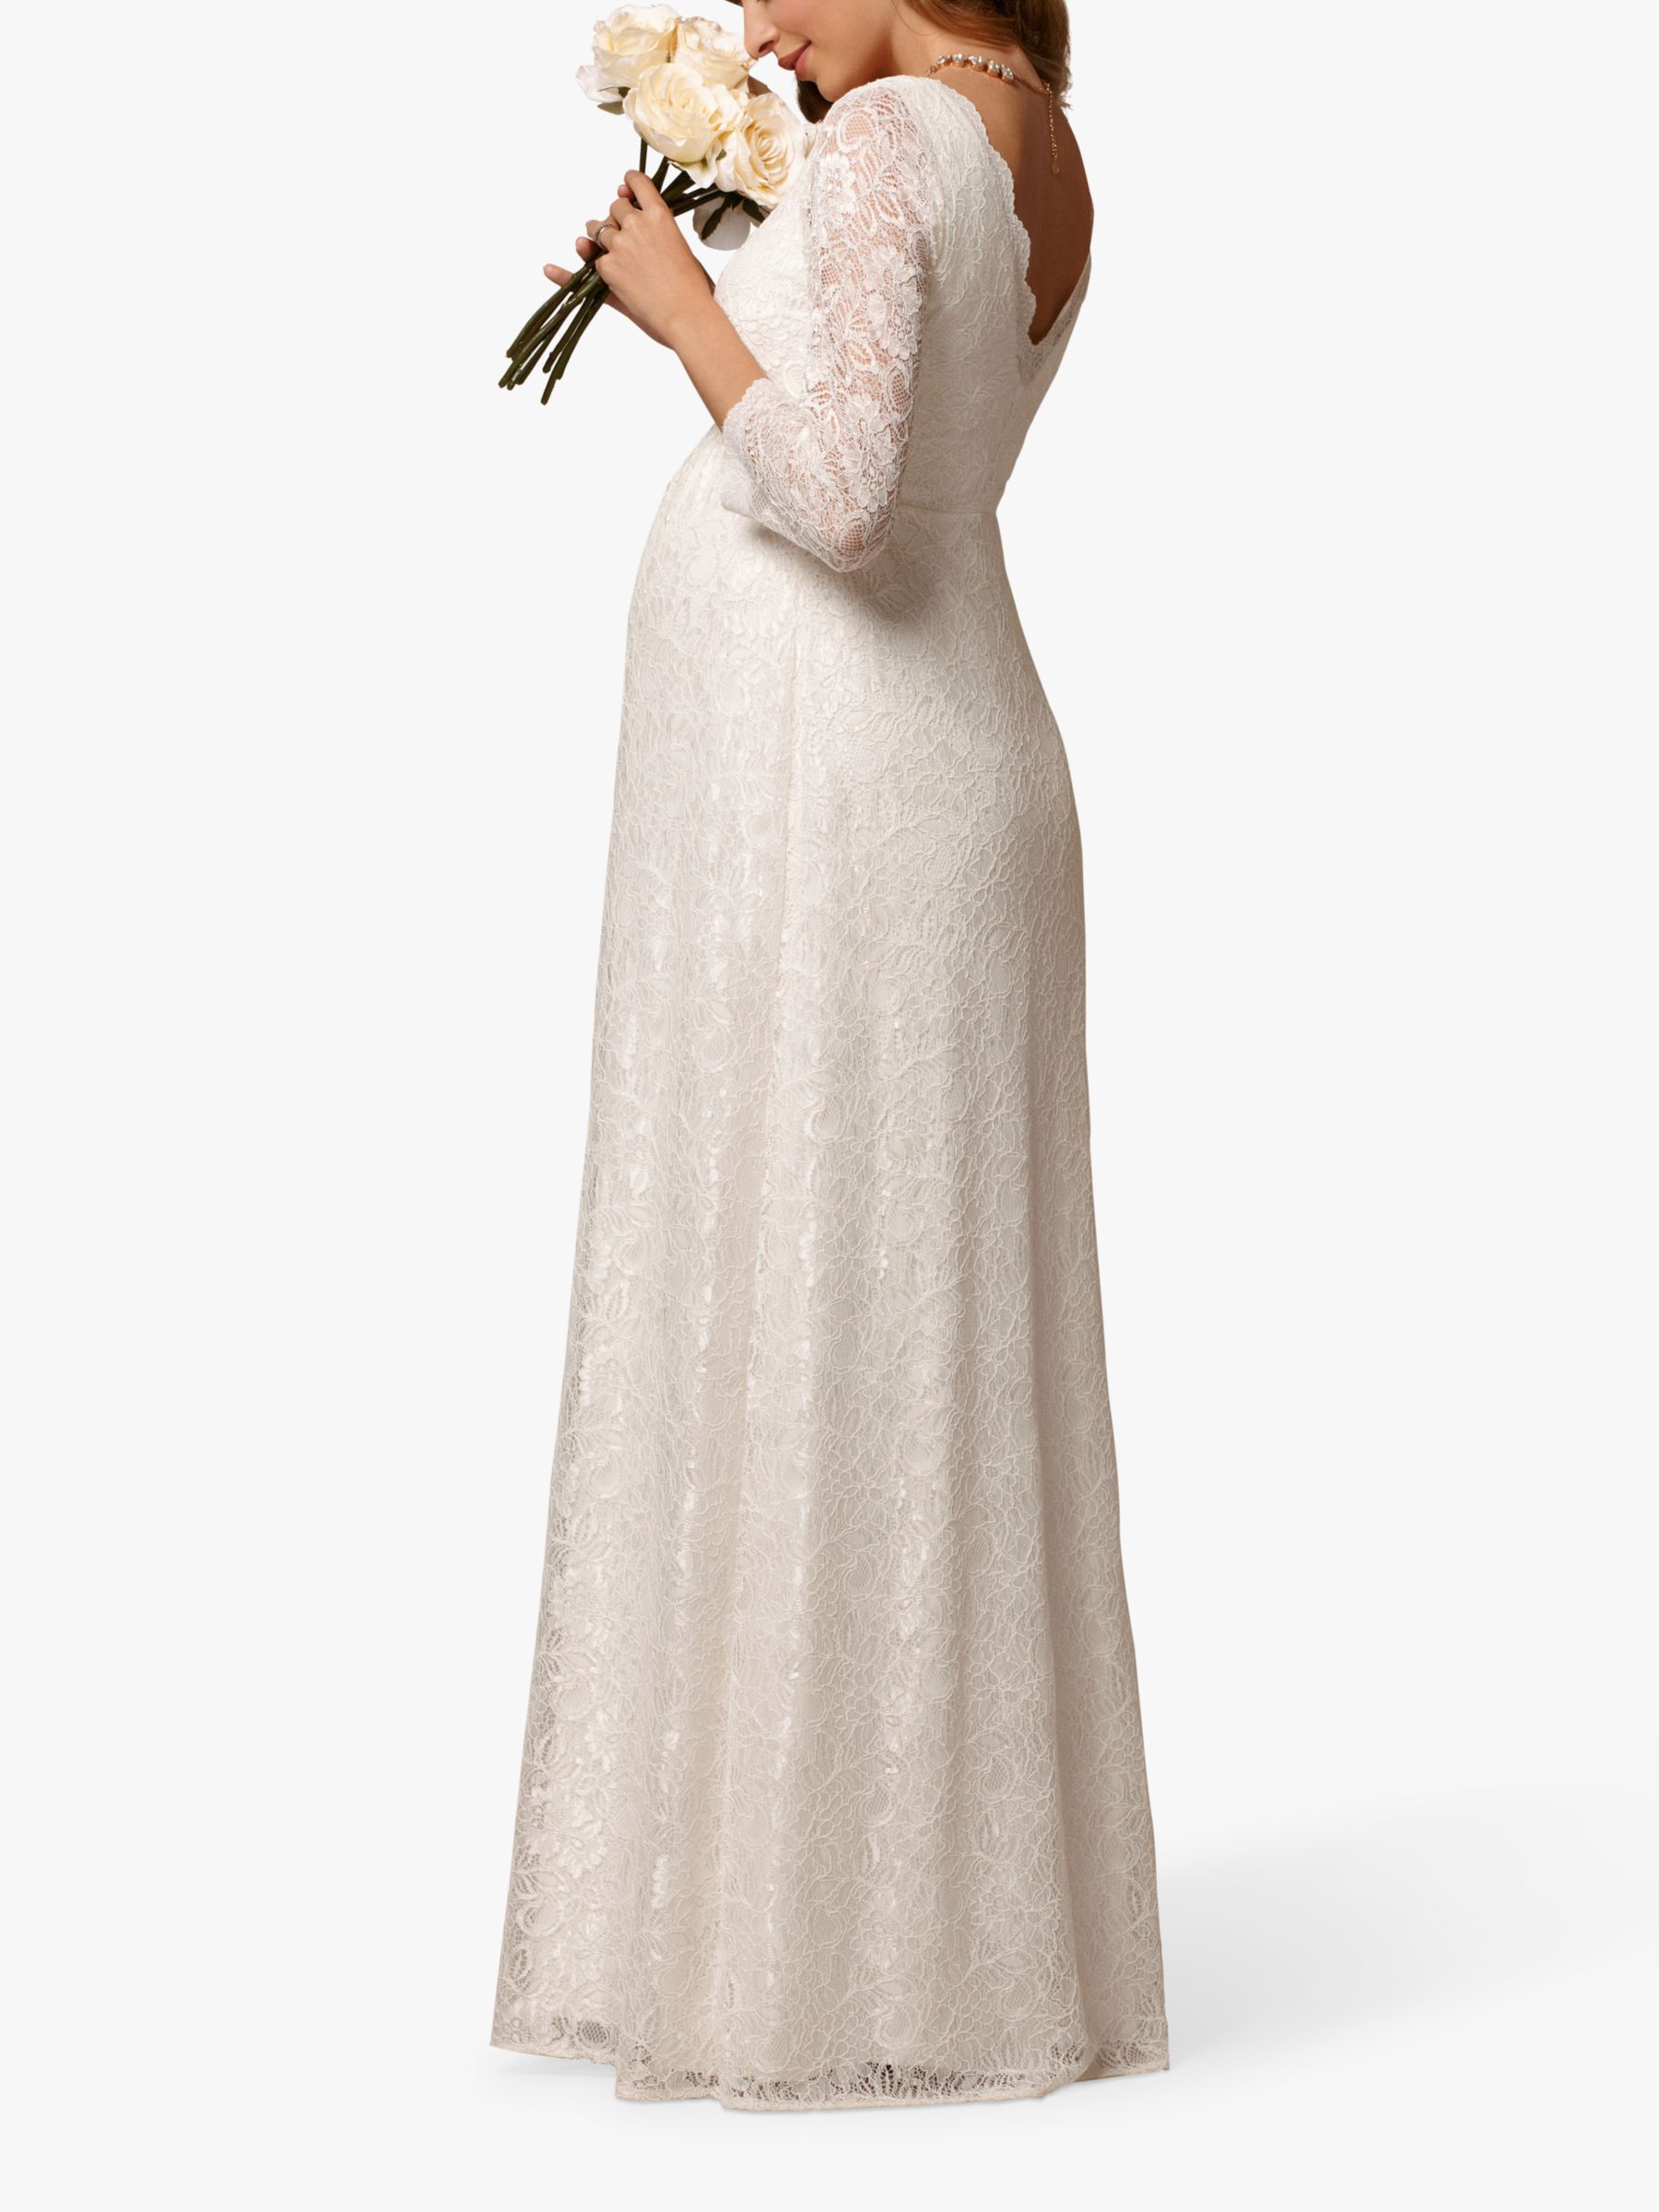 Tiffany Rose Chloe Lace Maternity Wedding Dress, Ivory, 6-8